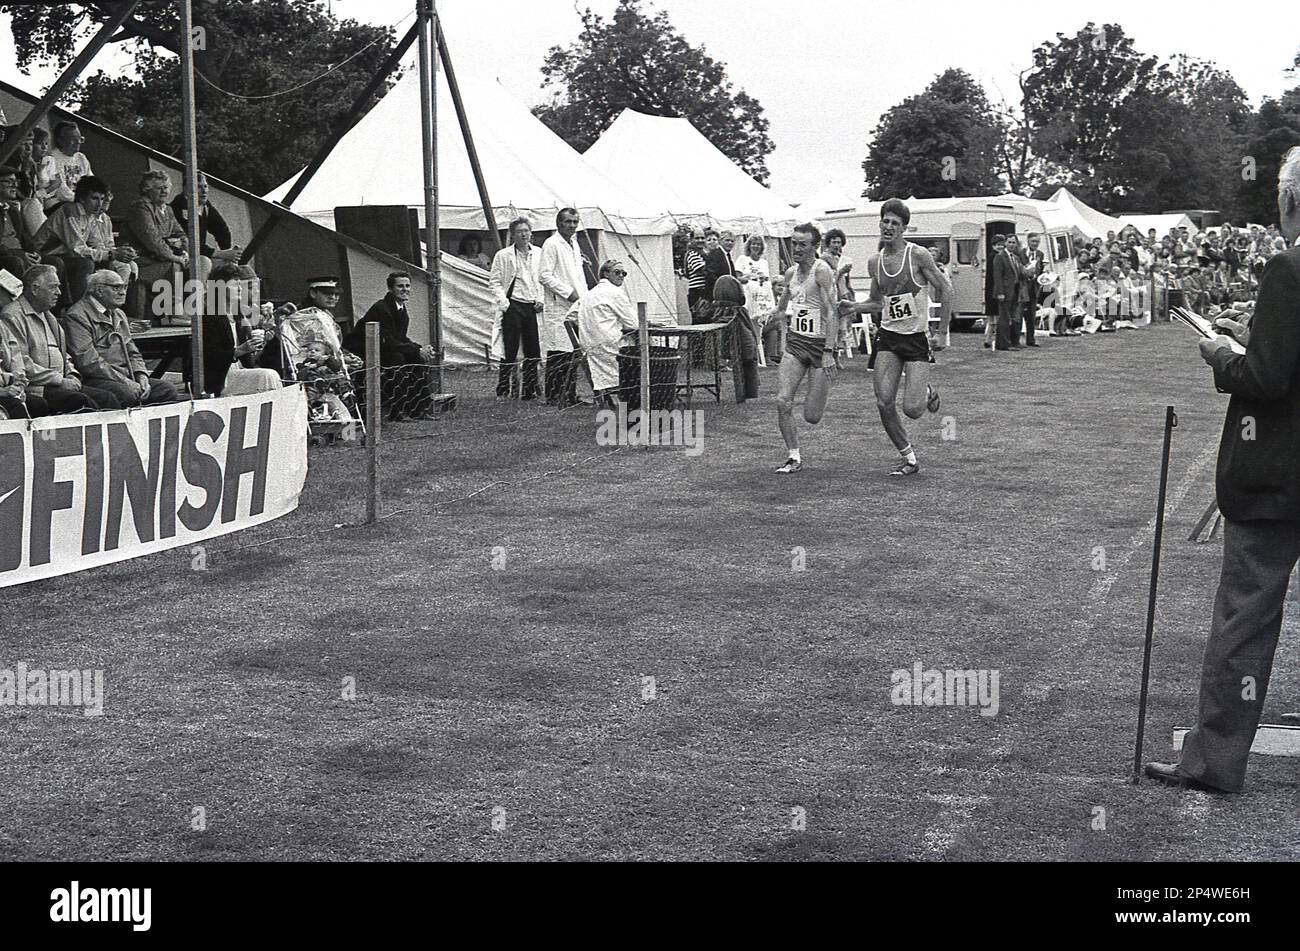 1989, das Ende eines Park-Running-Rennens, England, Großbritannien... das Bild zeigt zwei männliche Athleten, die nebeneinander springen, um als erste die Ziellinie zu erreichen und den Sieg zu erringen. Stockfoto